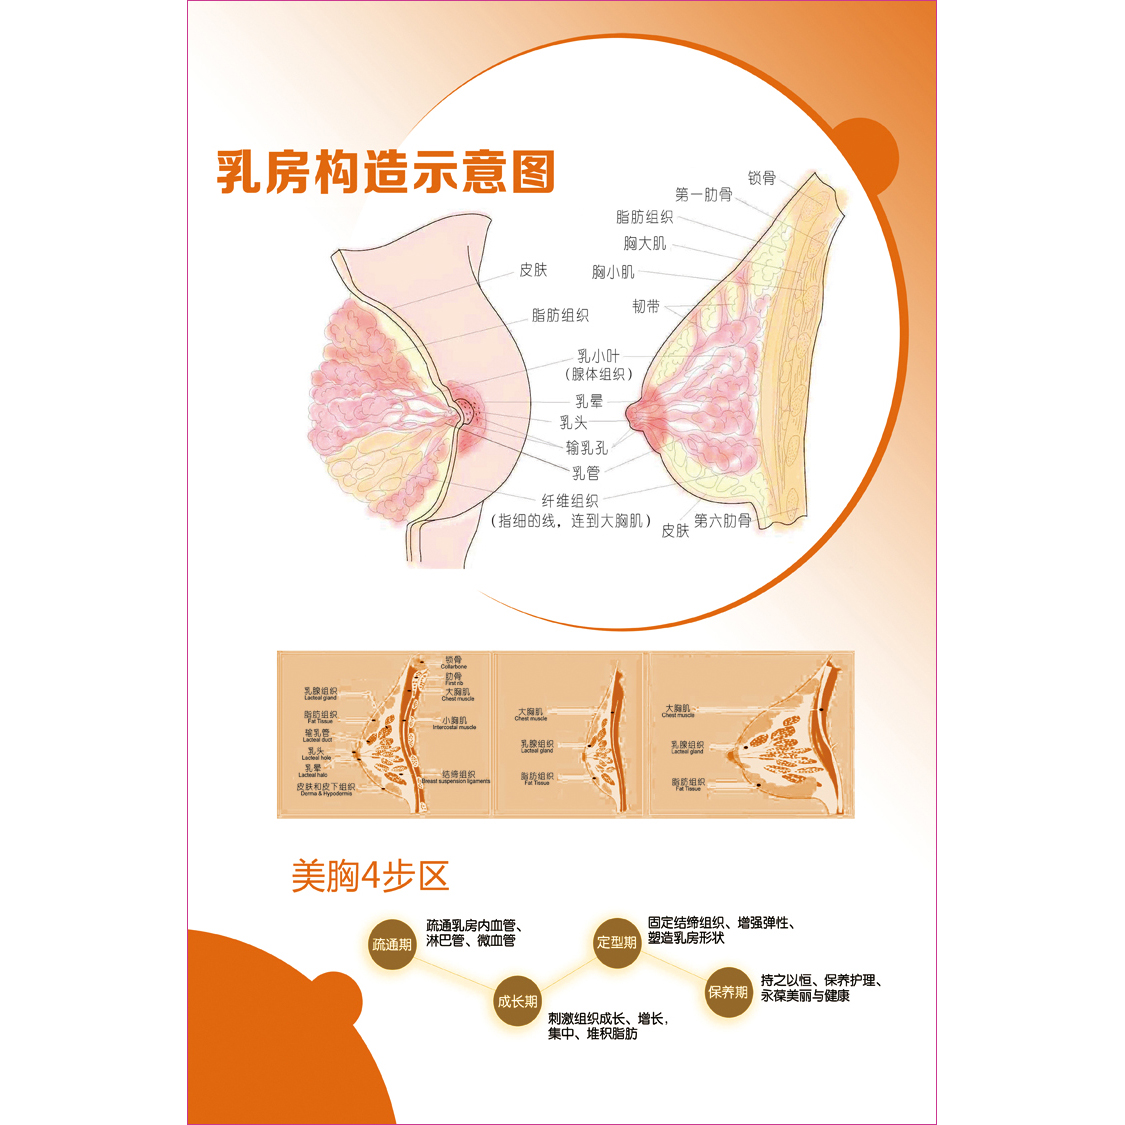 女性乳房结构图矢状解剖构造图胸部乳腺健康疾病保养经络穴位海报